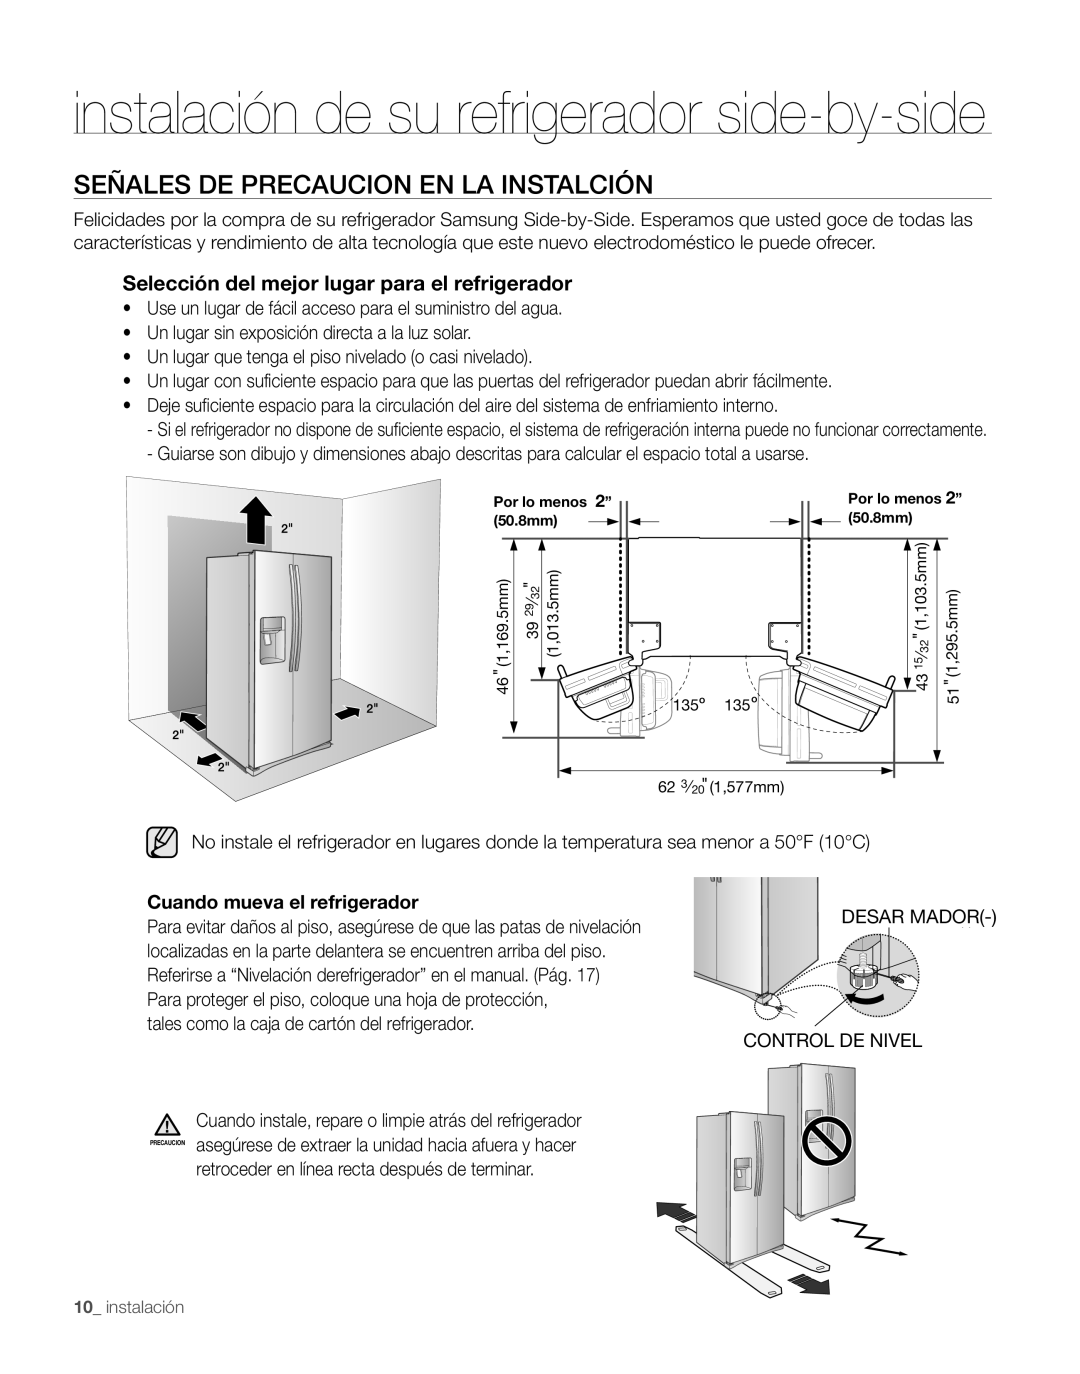 Samsung RS263TDRS, RS263TDPN, RS263TDWP instalación de su refrigerador side-by-side, Señales De Precaucion En La Instalción 